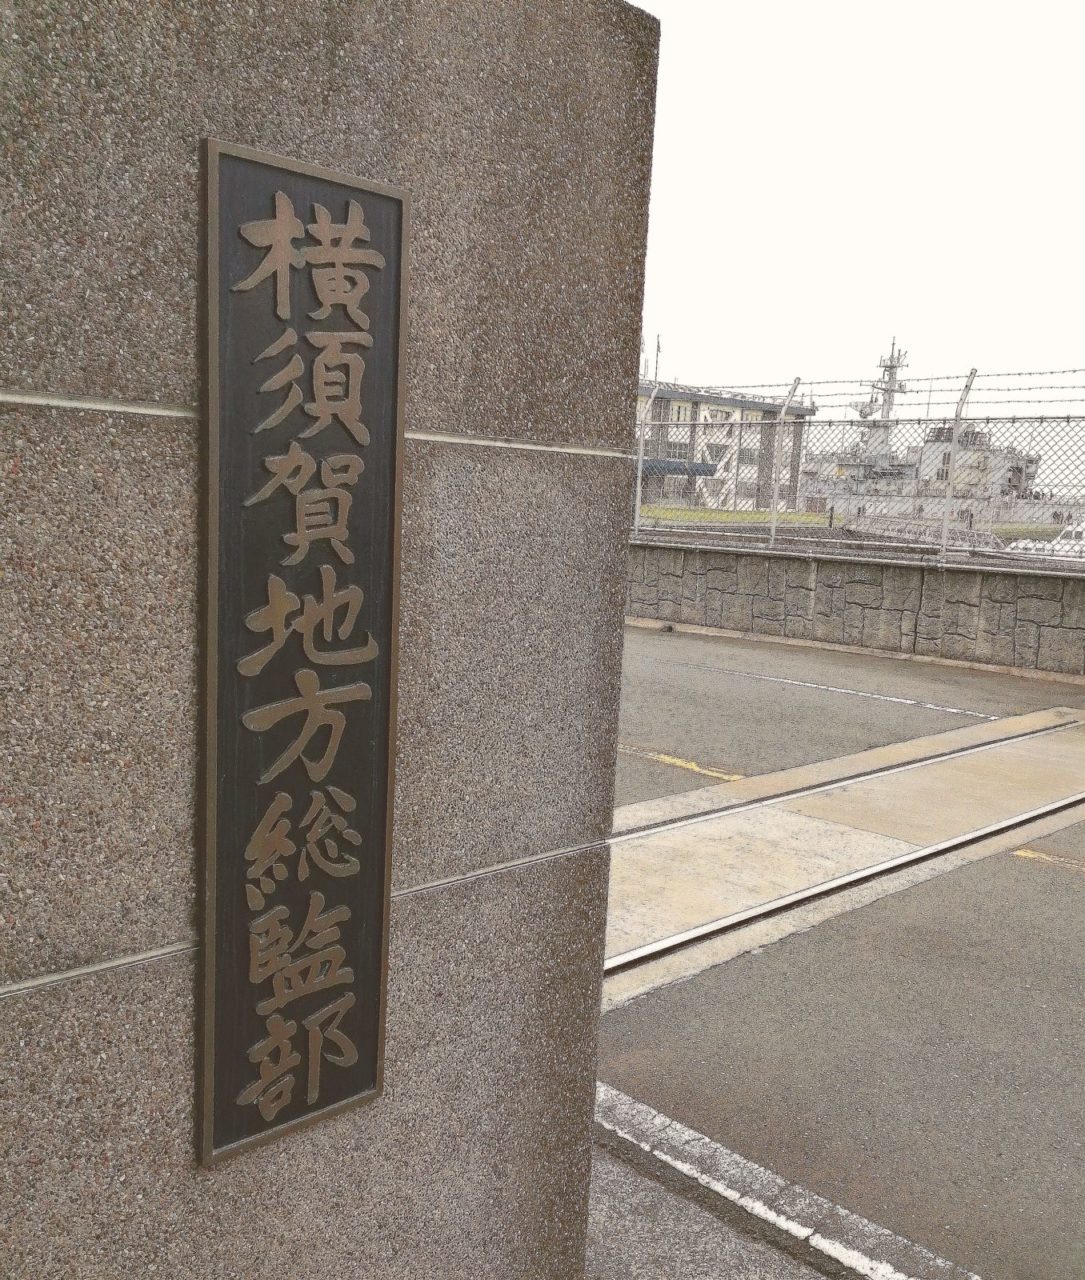 海上自衛隊横須賀地方総督部の画像